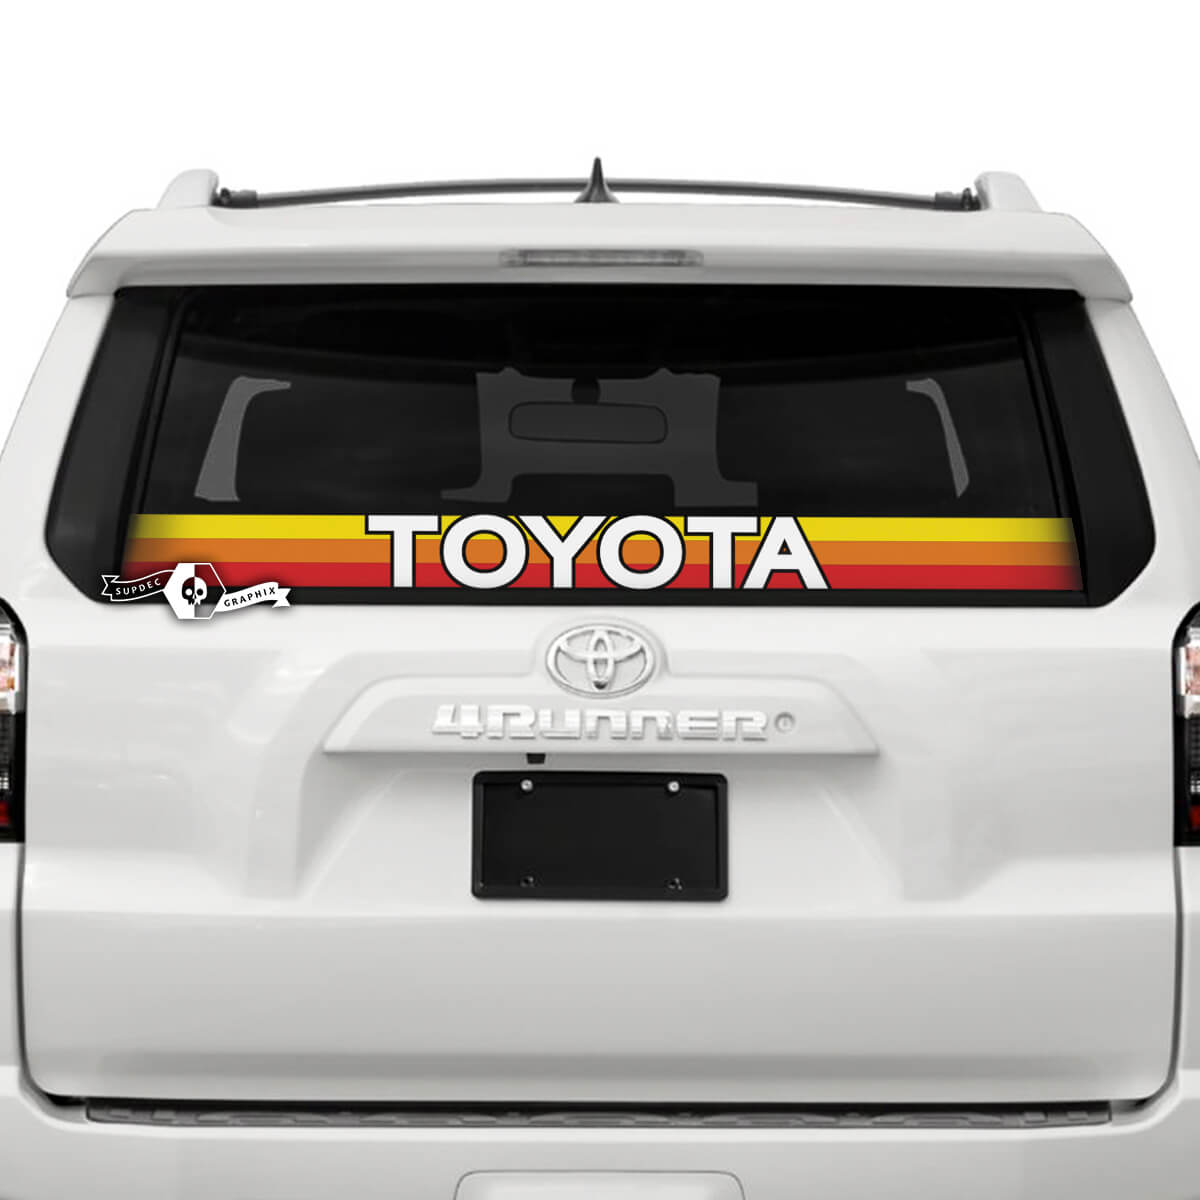 Toyota Windschutzscheibe Heckscheibe SunSet TriColor Vinyl Logo Aufkleber Aufkleber für Toyo
